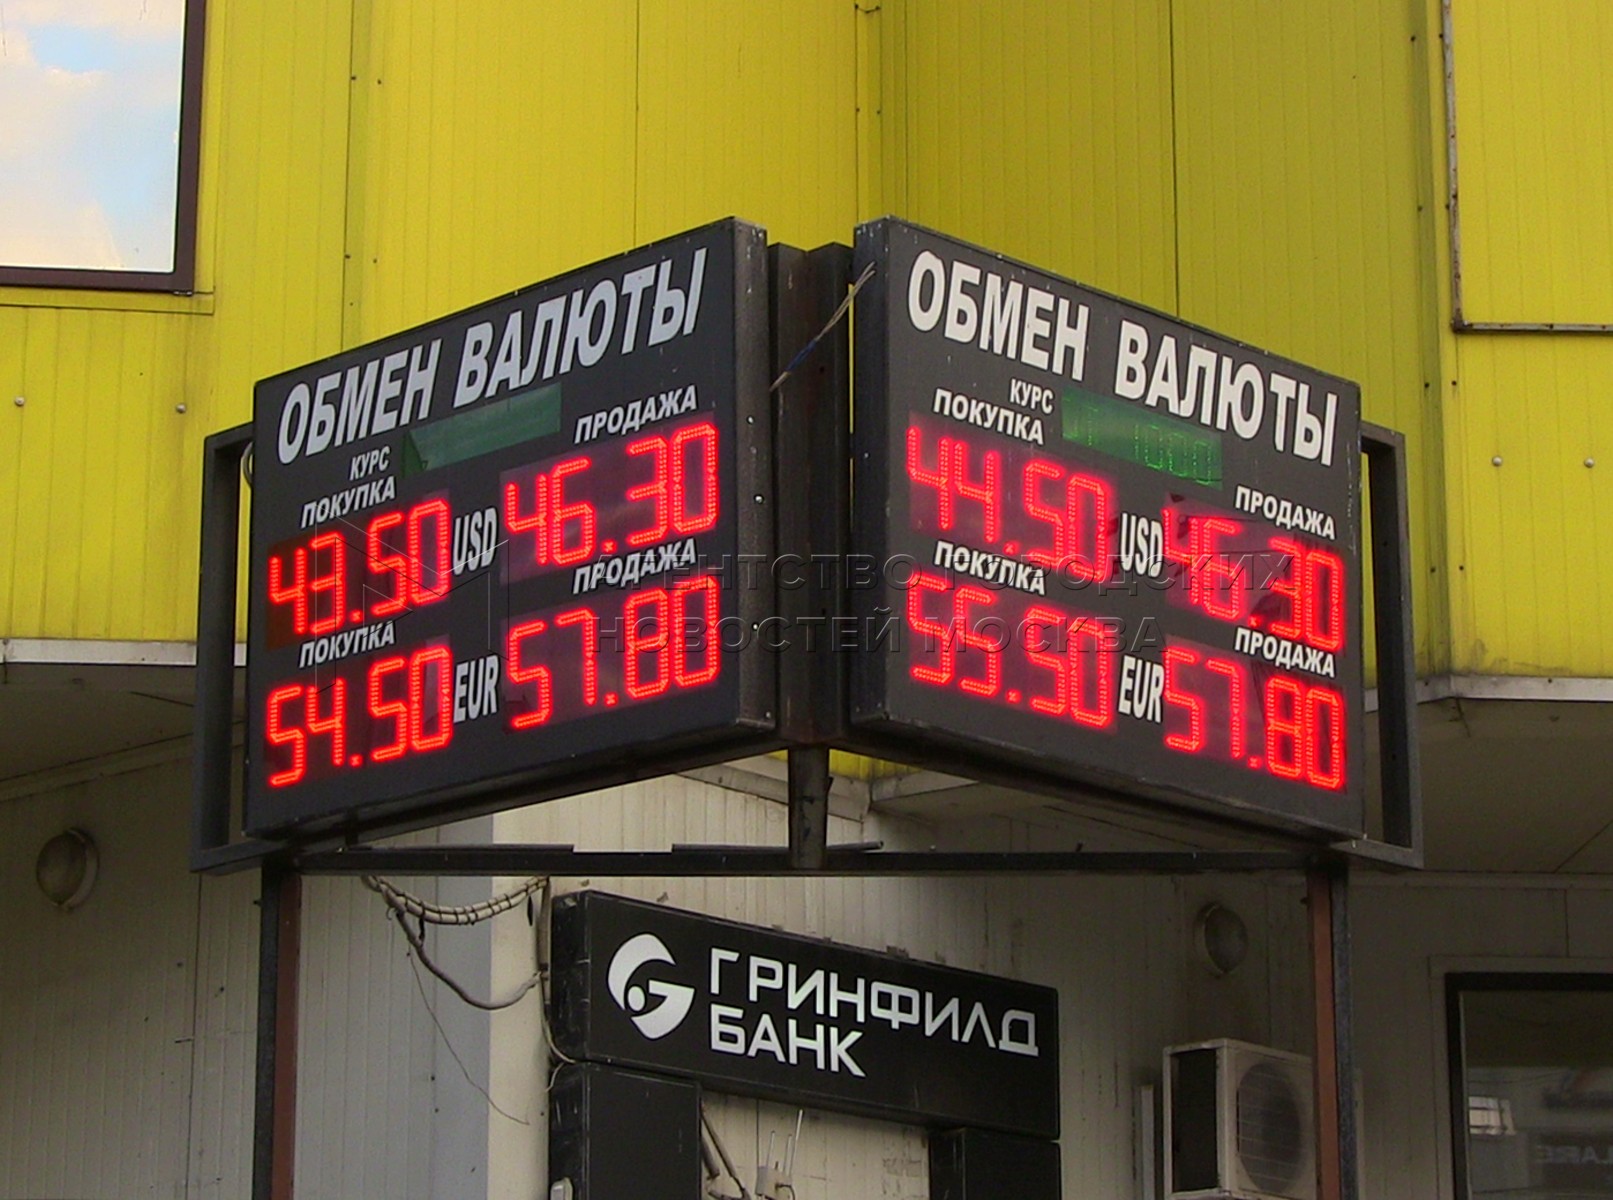 Обмен валют в москве 24 курс доллара в обменниках в москве